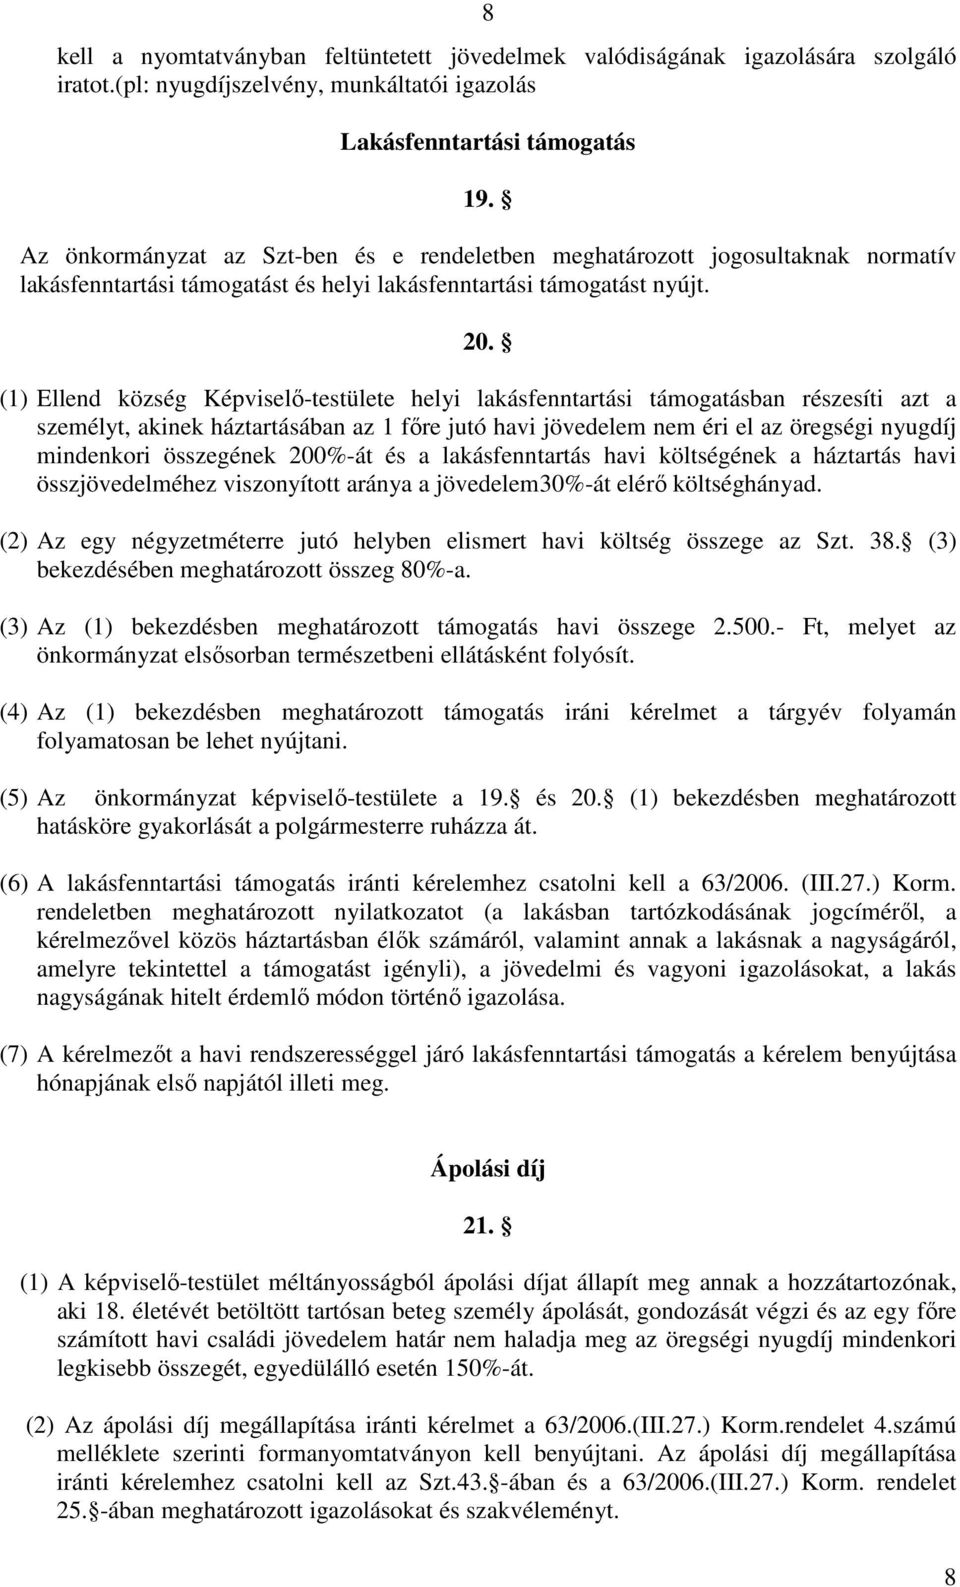 (1) Ellend község Képviselı-testülete helyi lakásfenntartási támogatásban részesíti azt a személyt, akinek háztartásában az 1 fıre jutó havi jövedelem nem éri el az öregségi nyugdíj mindenkori